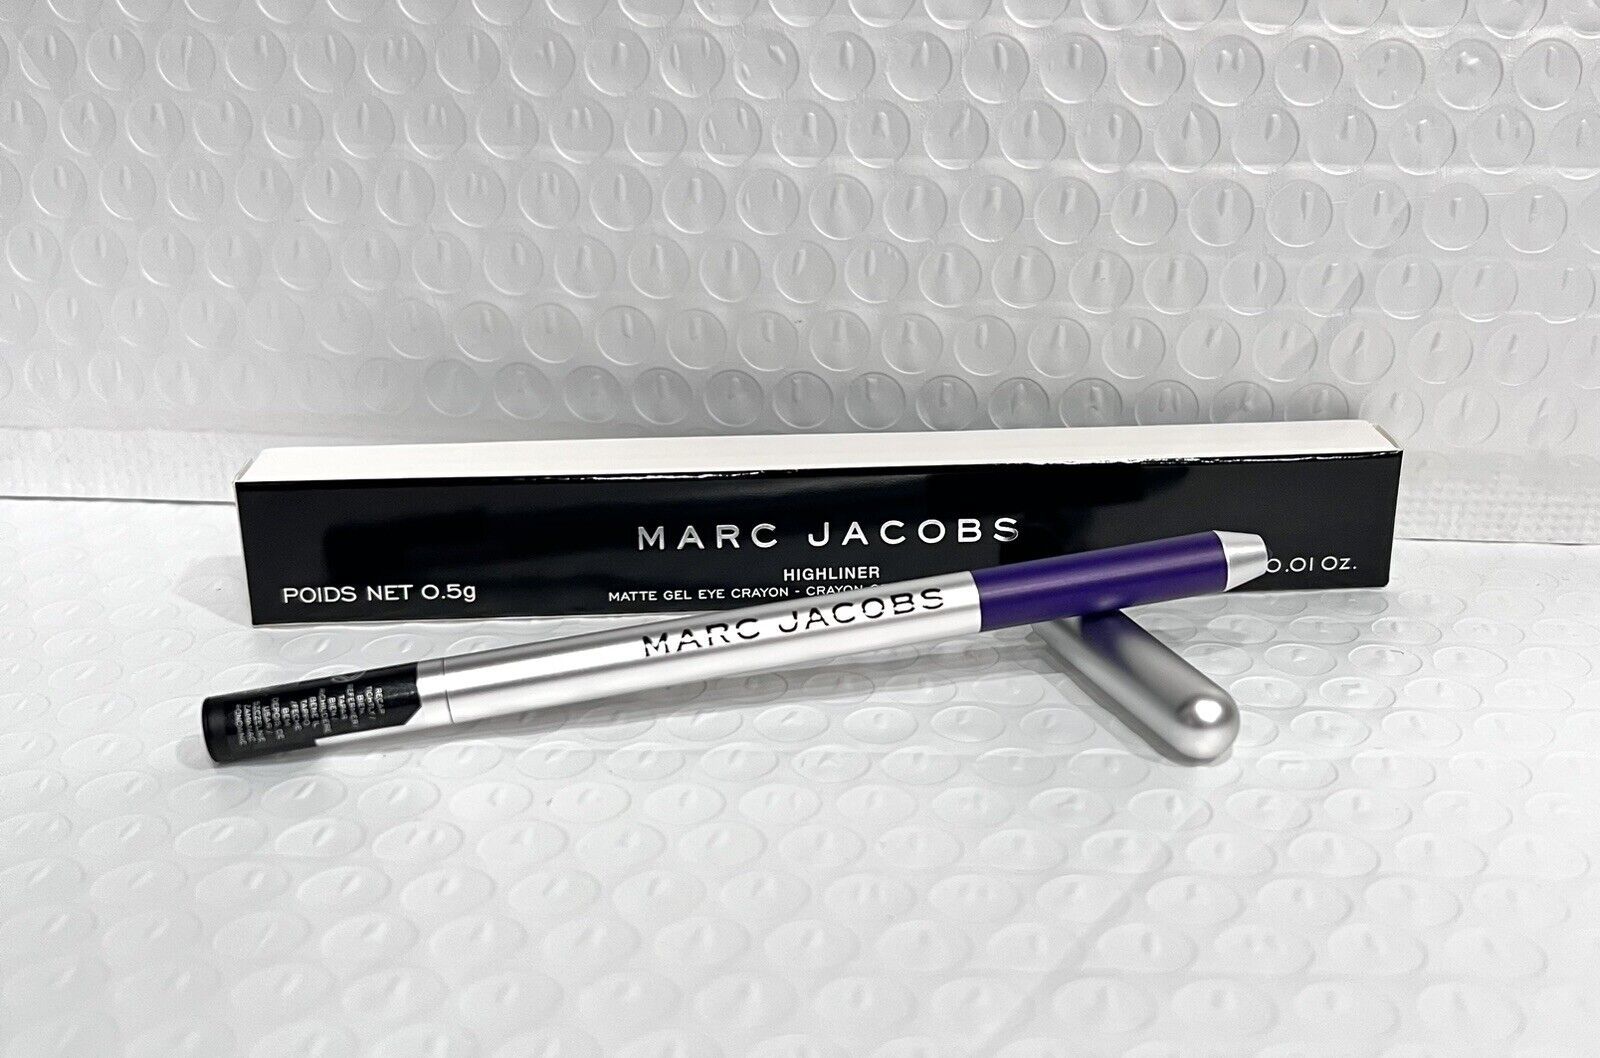 Primary image for Marc Jacobs Highliner Matte Gel Eye Crayon Liner 63 Grapevine (Grape)vine Full